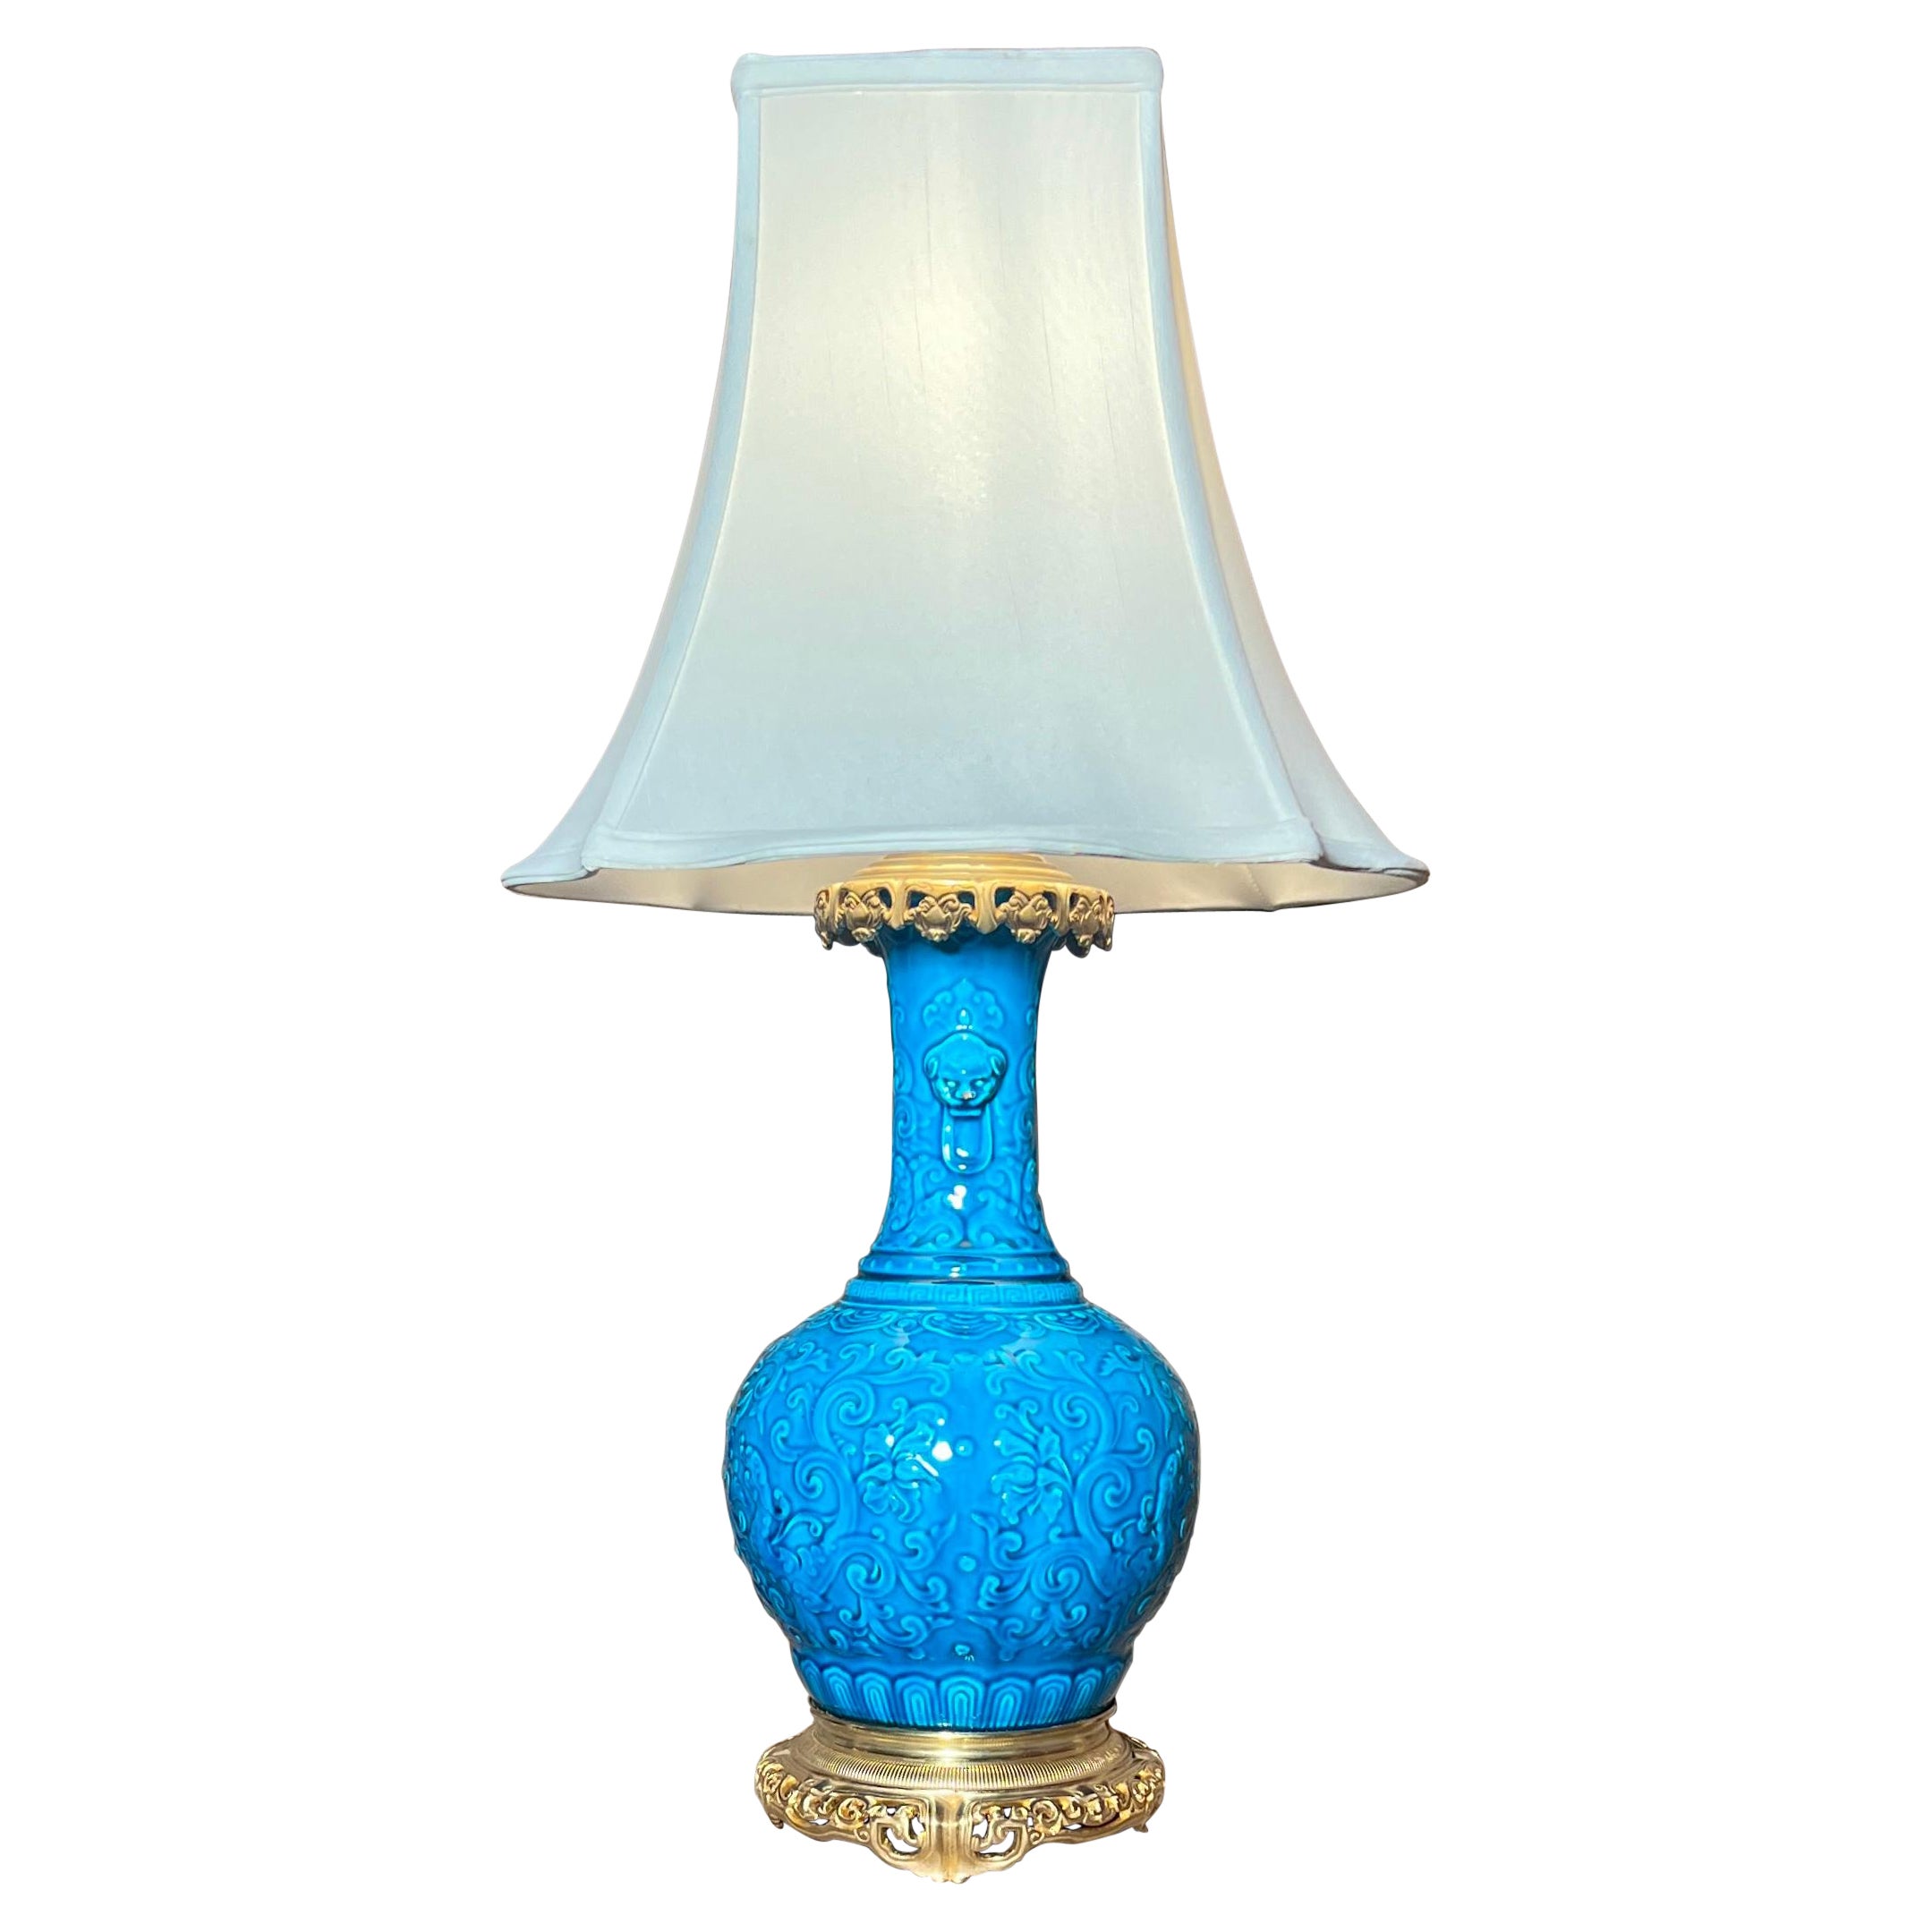 Antike französische blaue Porzellanlampe mit Goldbronze-Beschlägen, um 1885-1890.